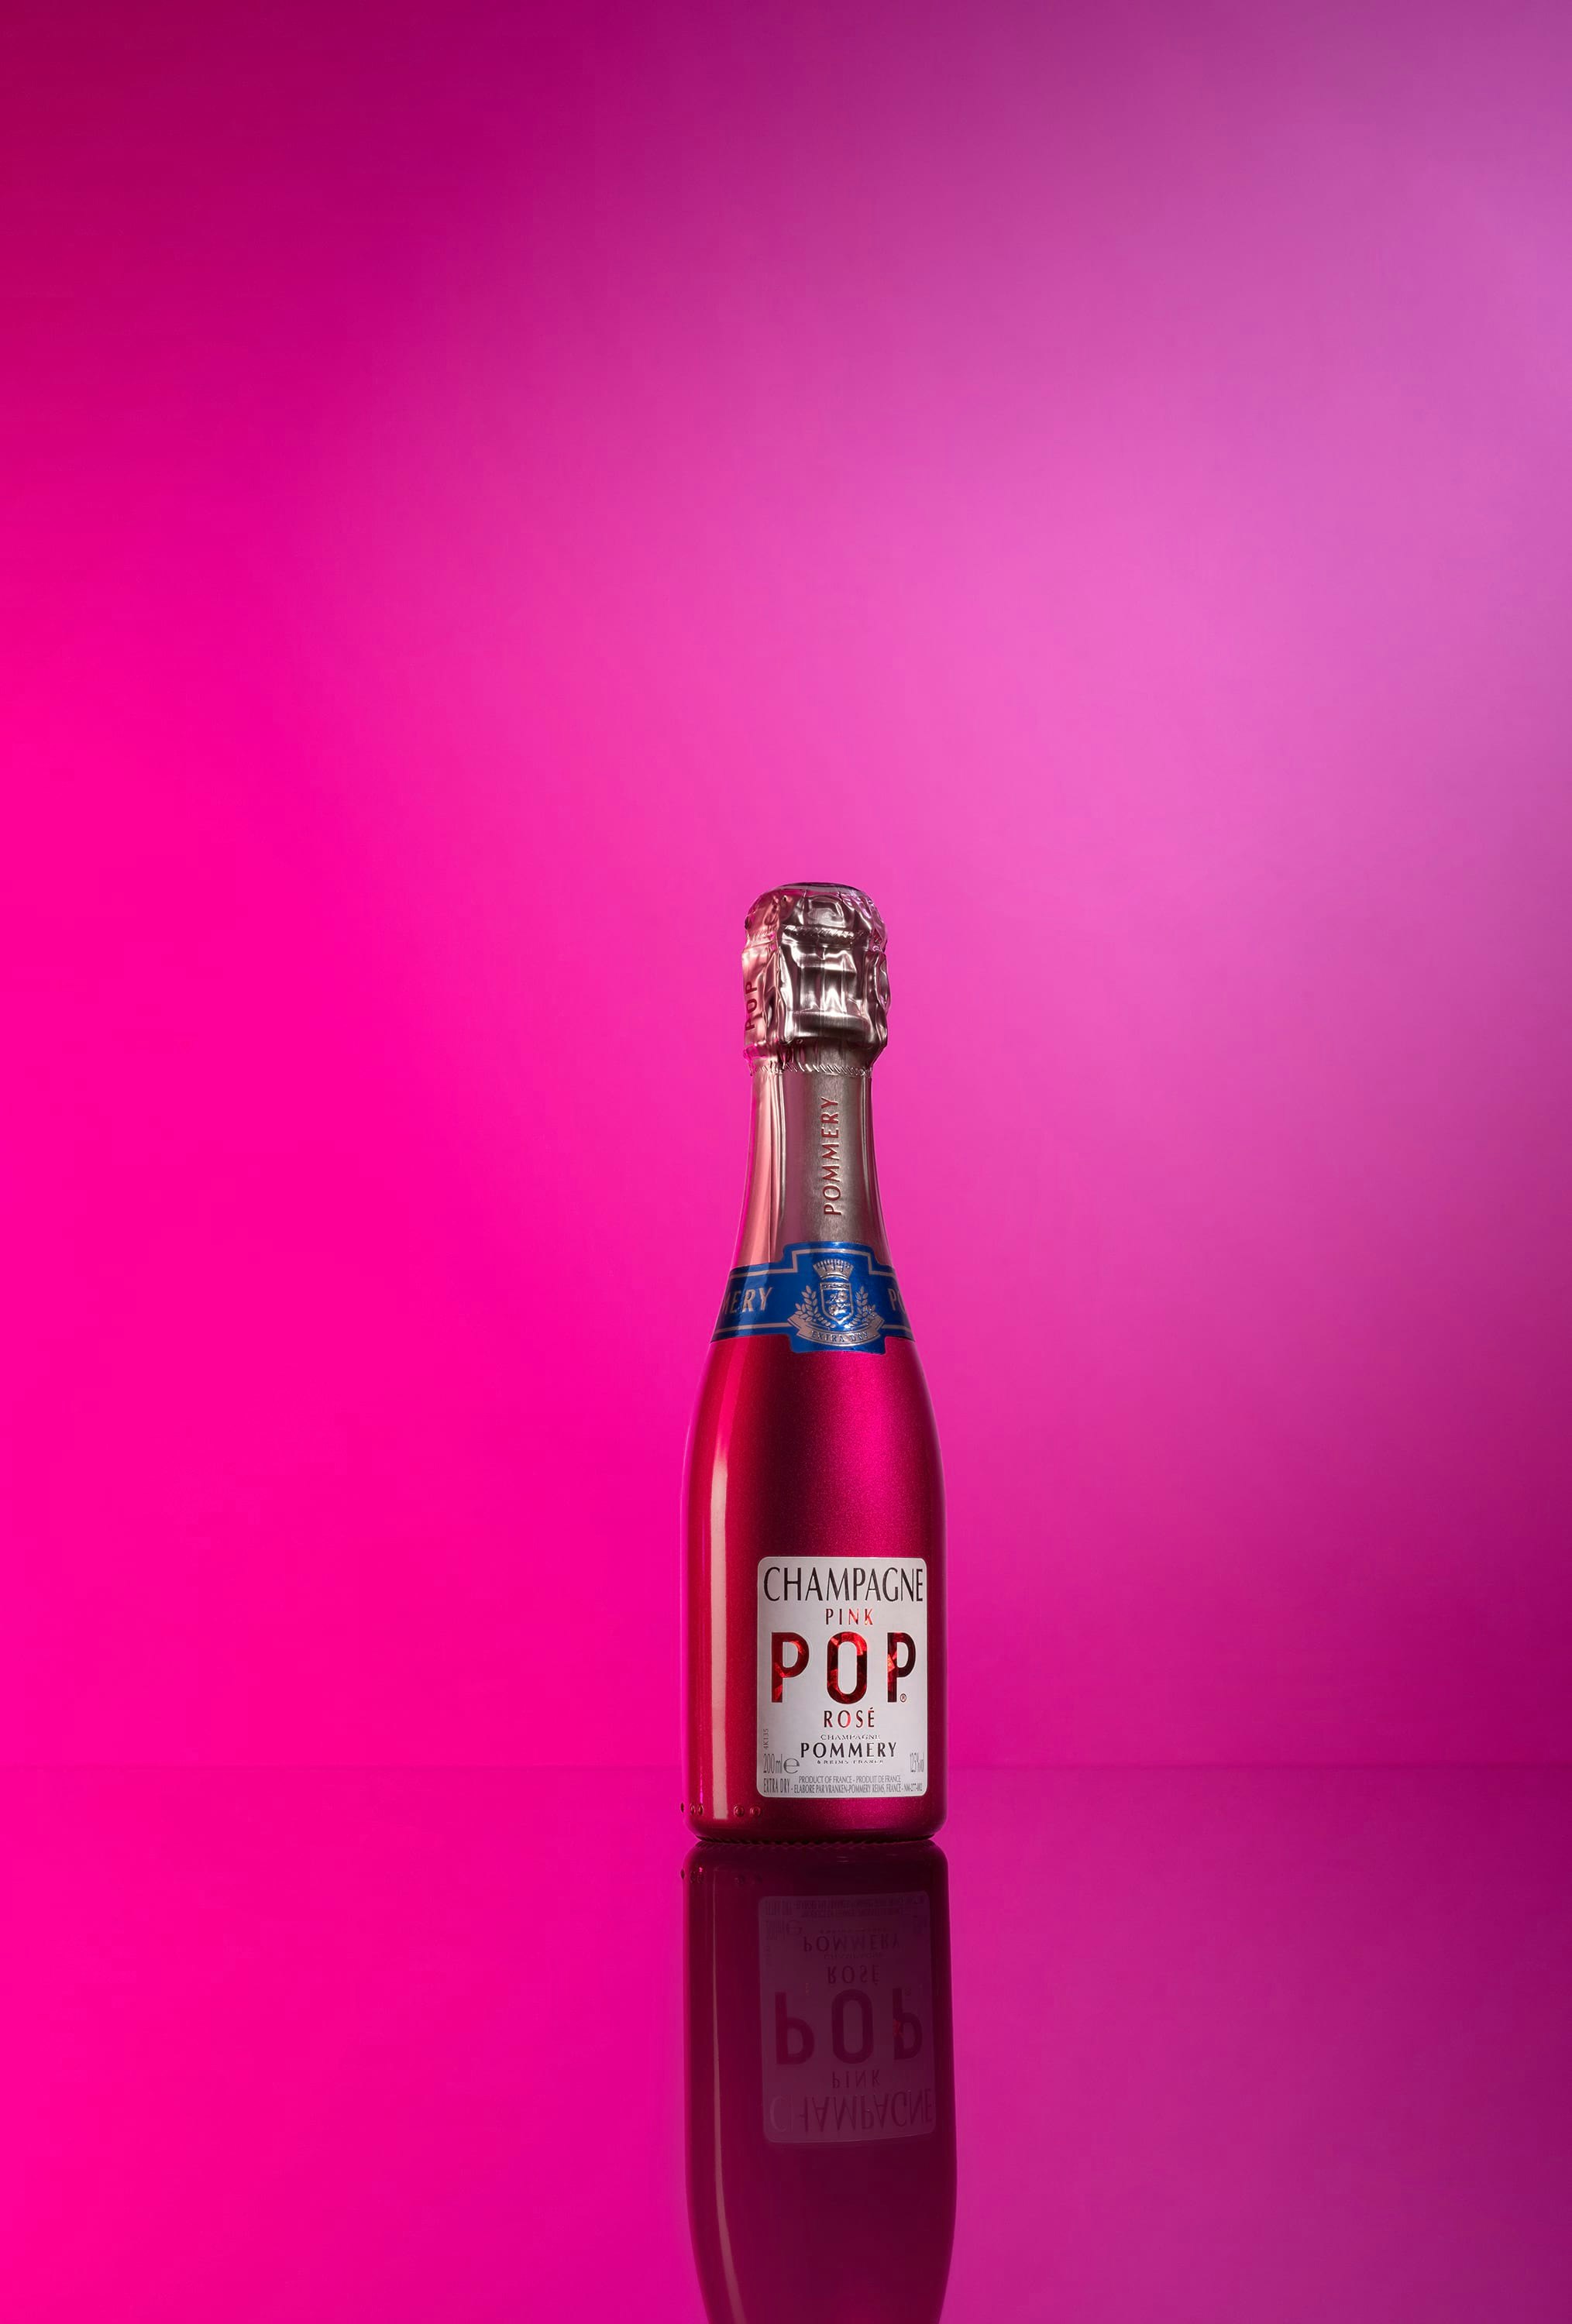 Quarter bottle of Pommery Pink Pop 20cl on pink font